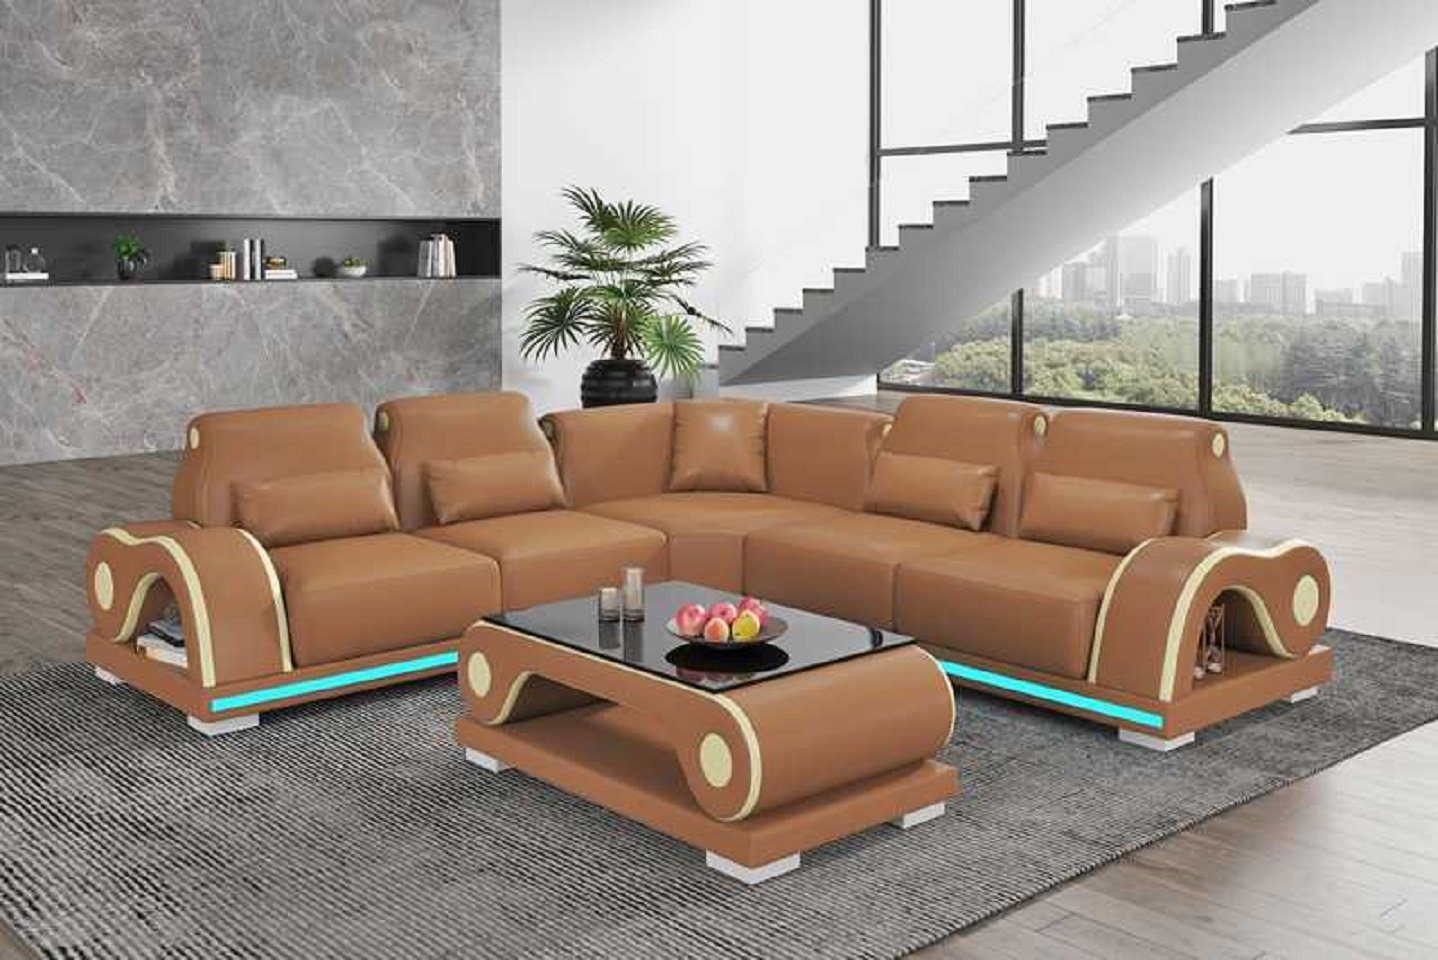 JVmoebel Ecksofa Luxus Ecksofa L Form Couch Sofa Moderne Eckgarnitur Couchen, 3 Teile, Made in Europe Braun